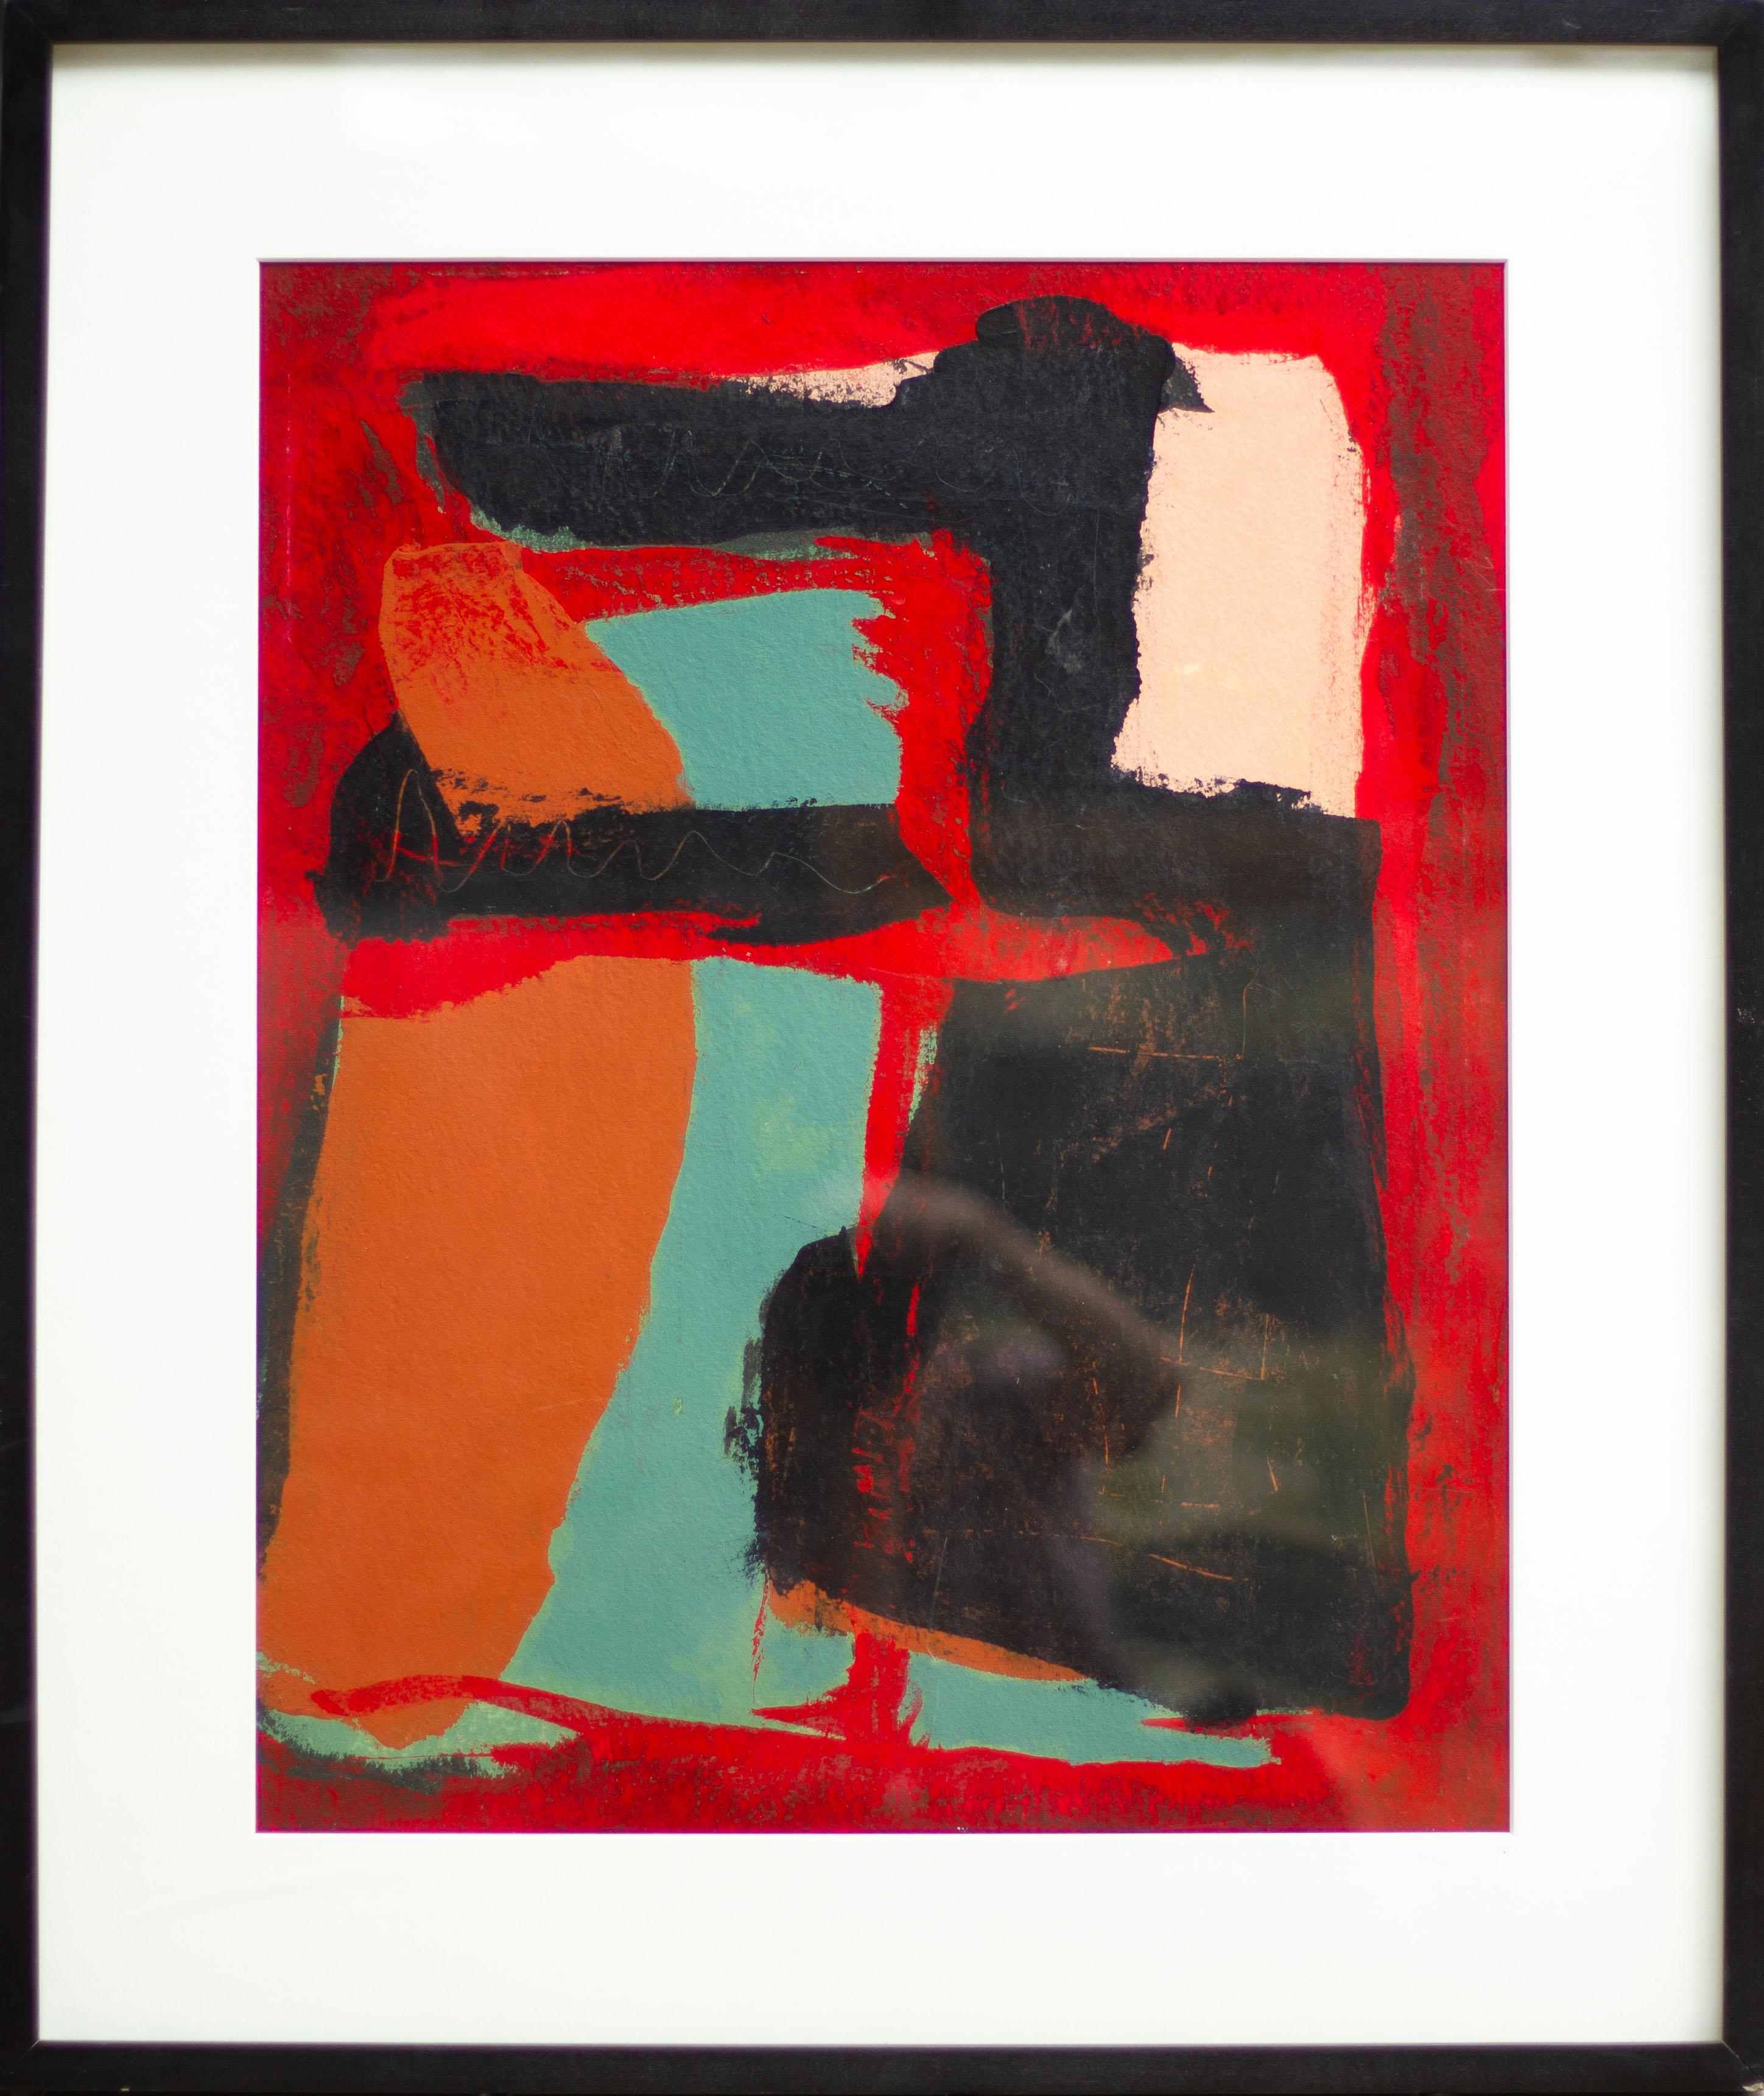 Peinture gestuelle abstraite rouge, noire, orange et turquoise - champ de couleurs - Painting de Tom Reno